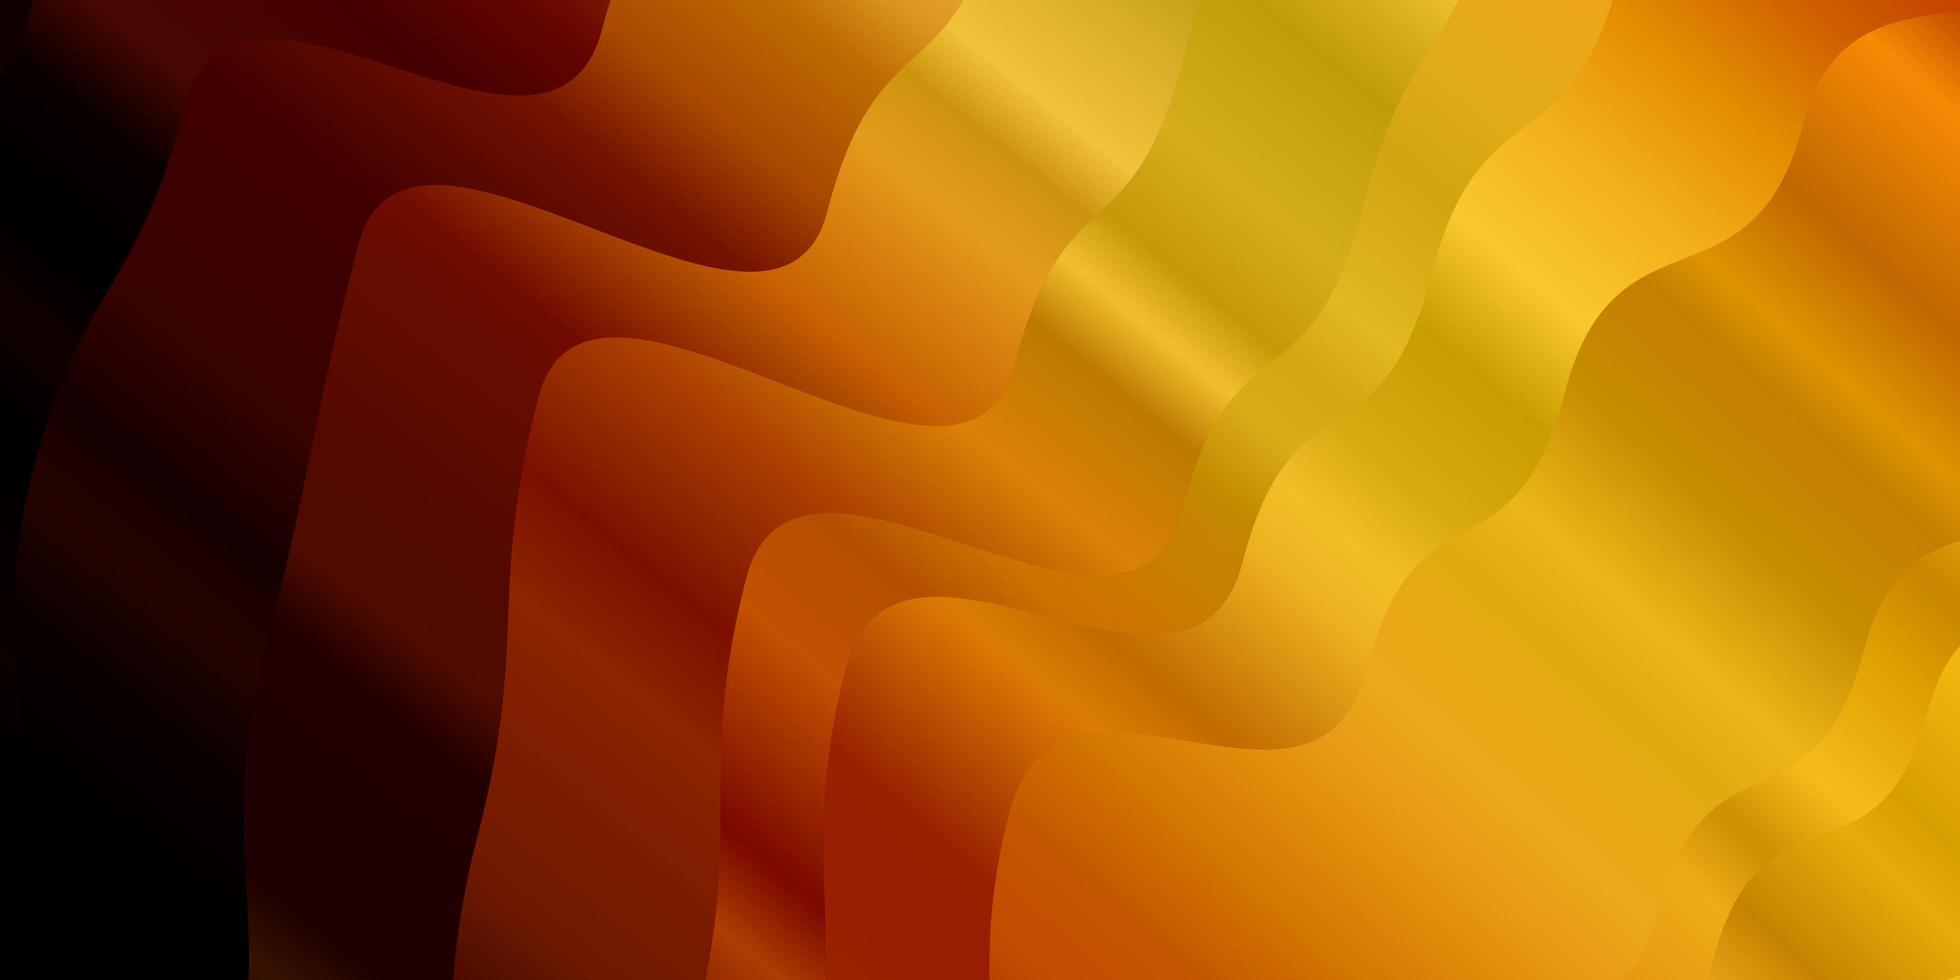 sfondo vettoriale arancione chiaro con fiocchi. illustrazione colorata in stile astratto con linee piegate. modello per siti Web, pagine di destinazione.